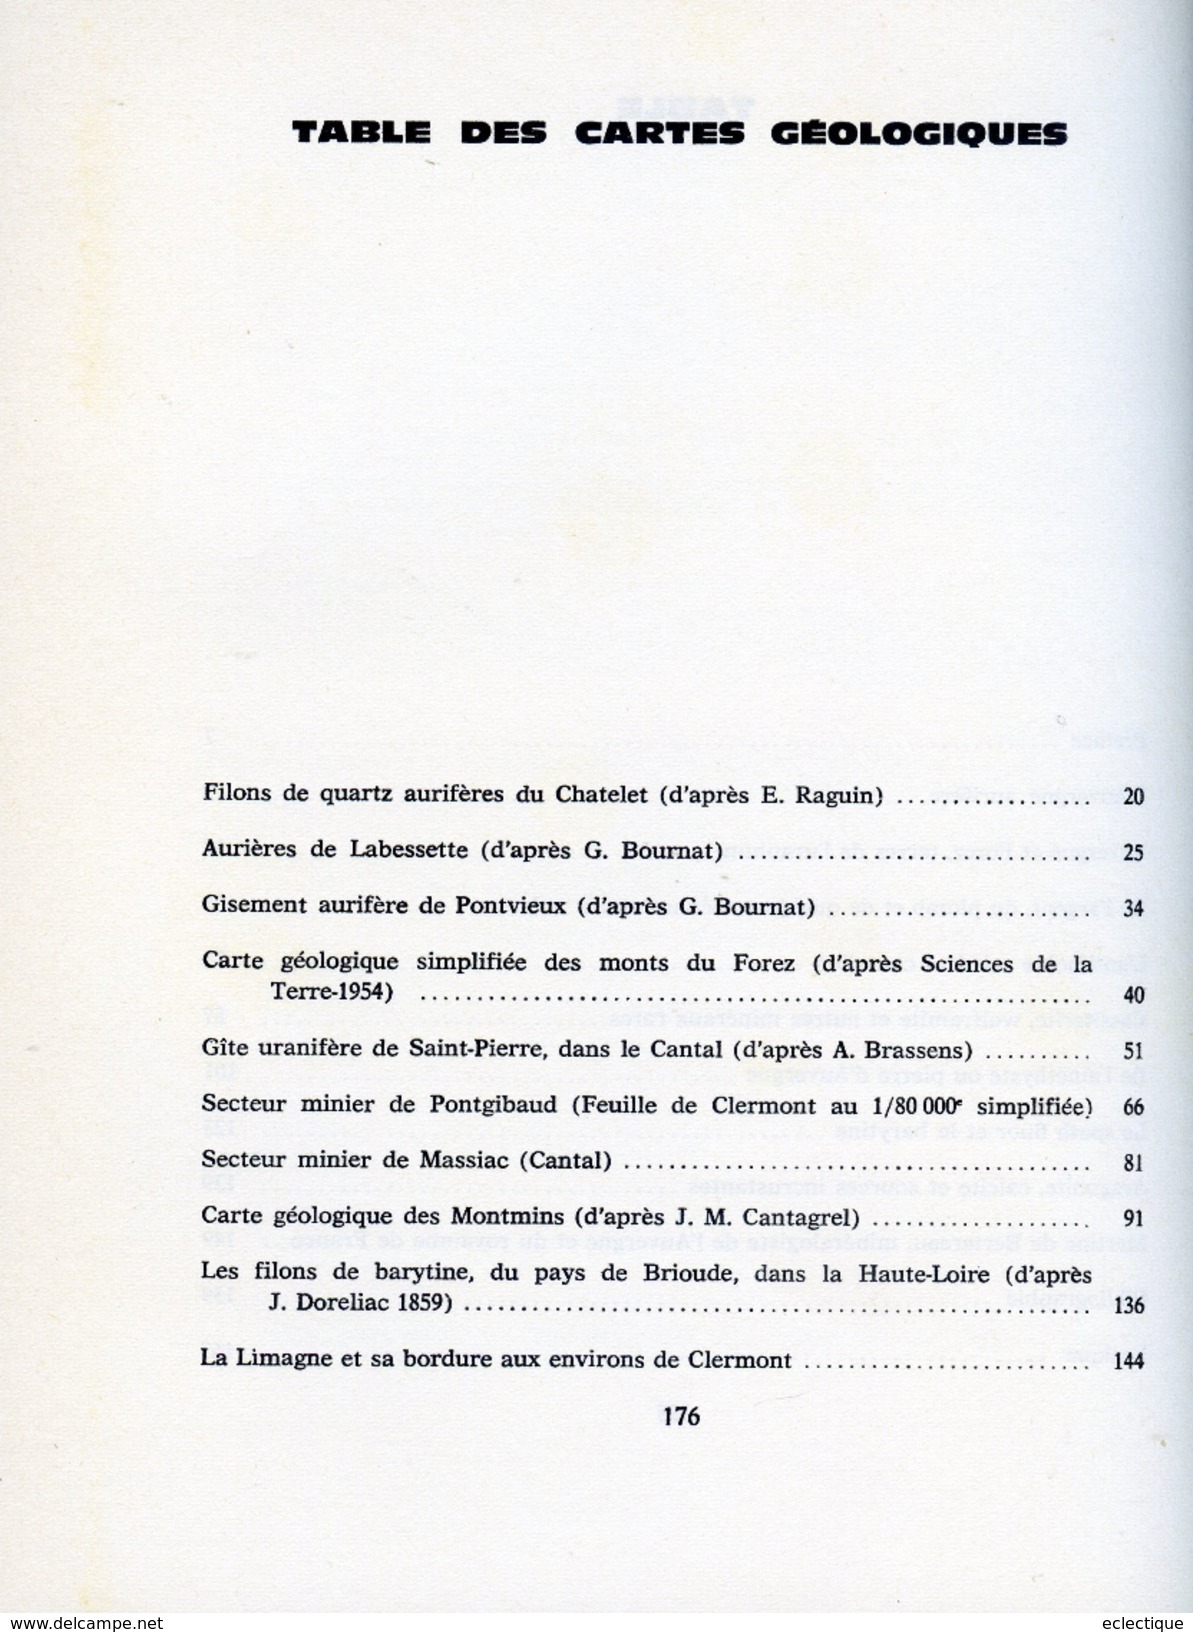 Richesses Minéralogiques De L'Auvergne,par Aimé RUDEL Editions Volcans, 1966 - Auvergne